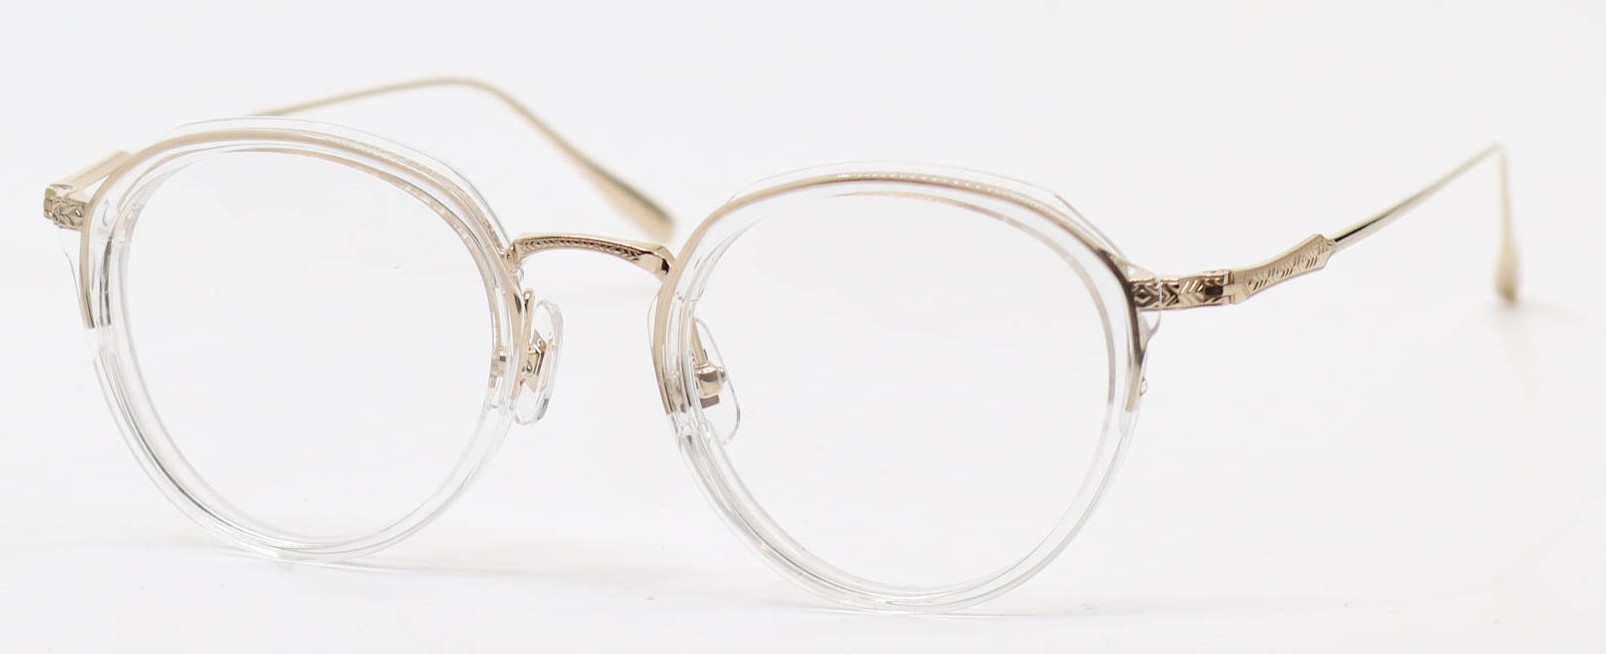 眼鏡のカラータイプC-4 Clear/Gold